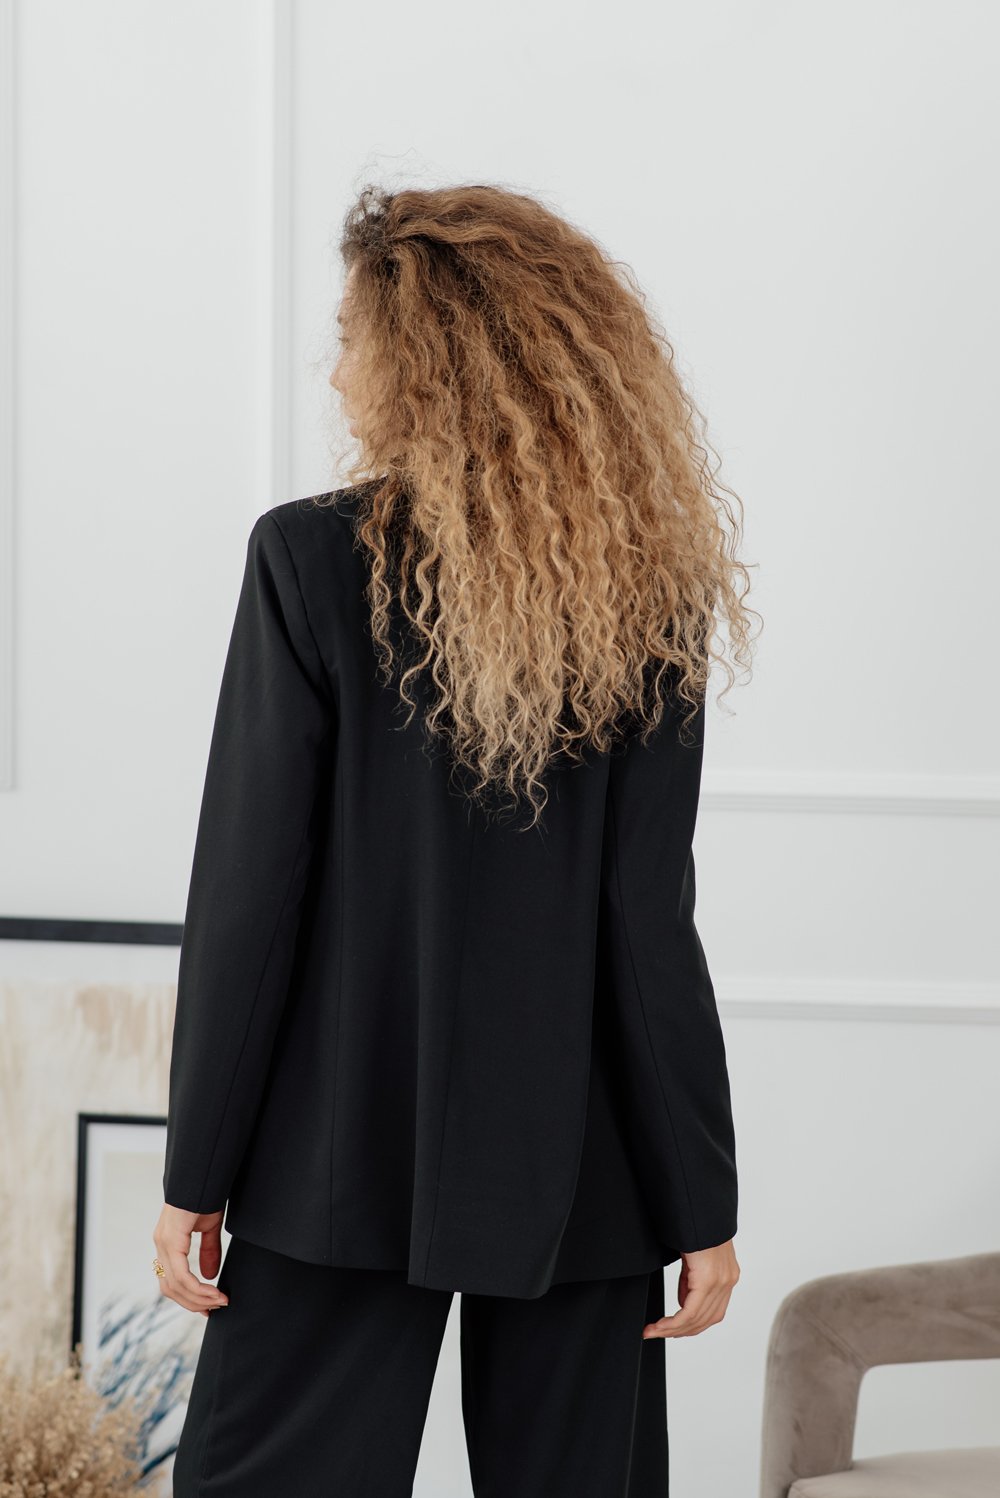 Черный приталенный пиджак